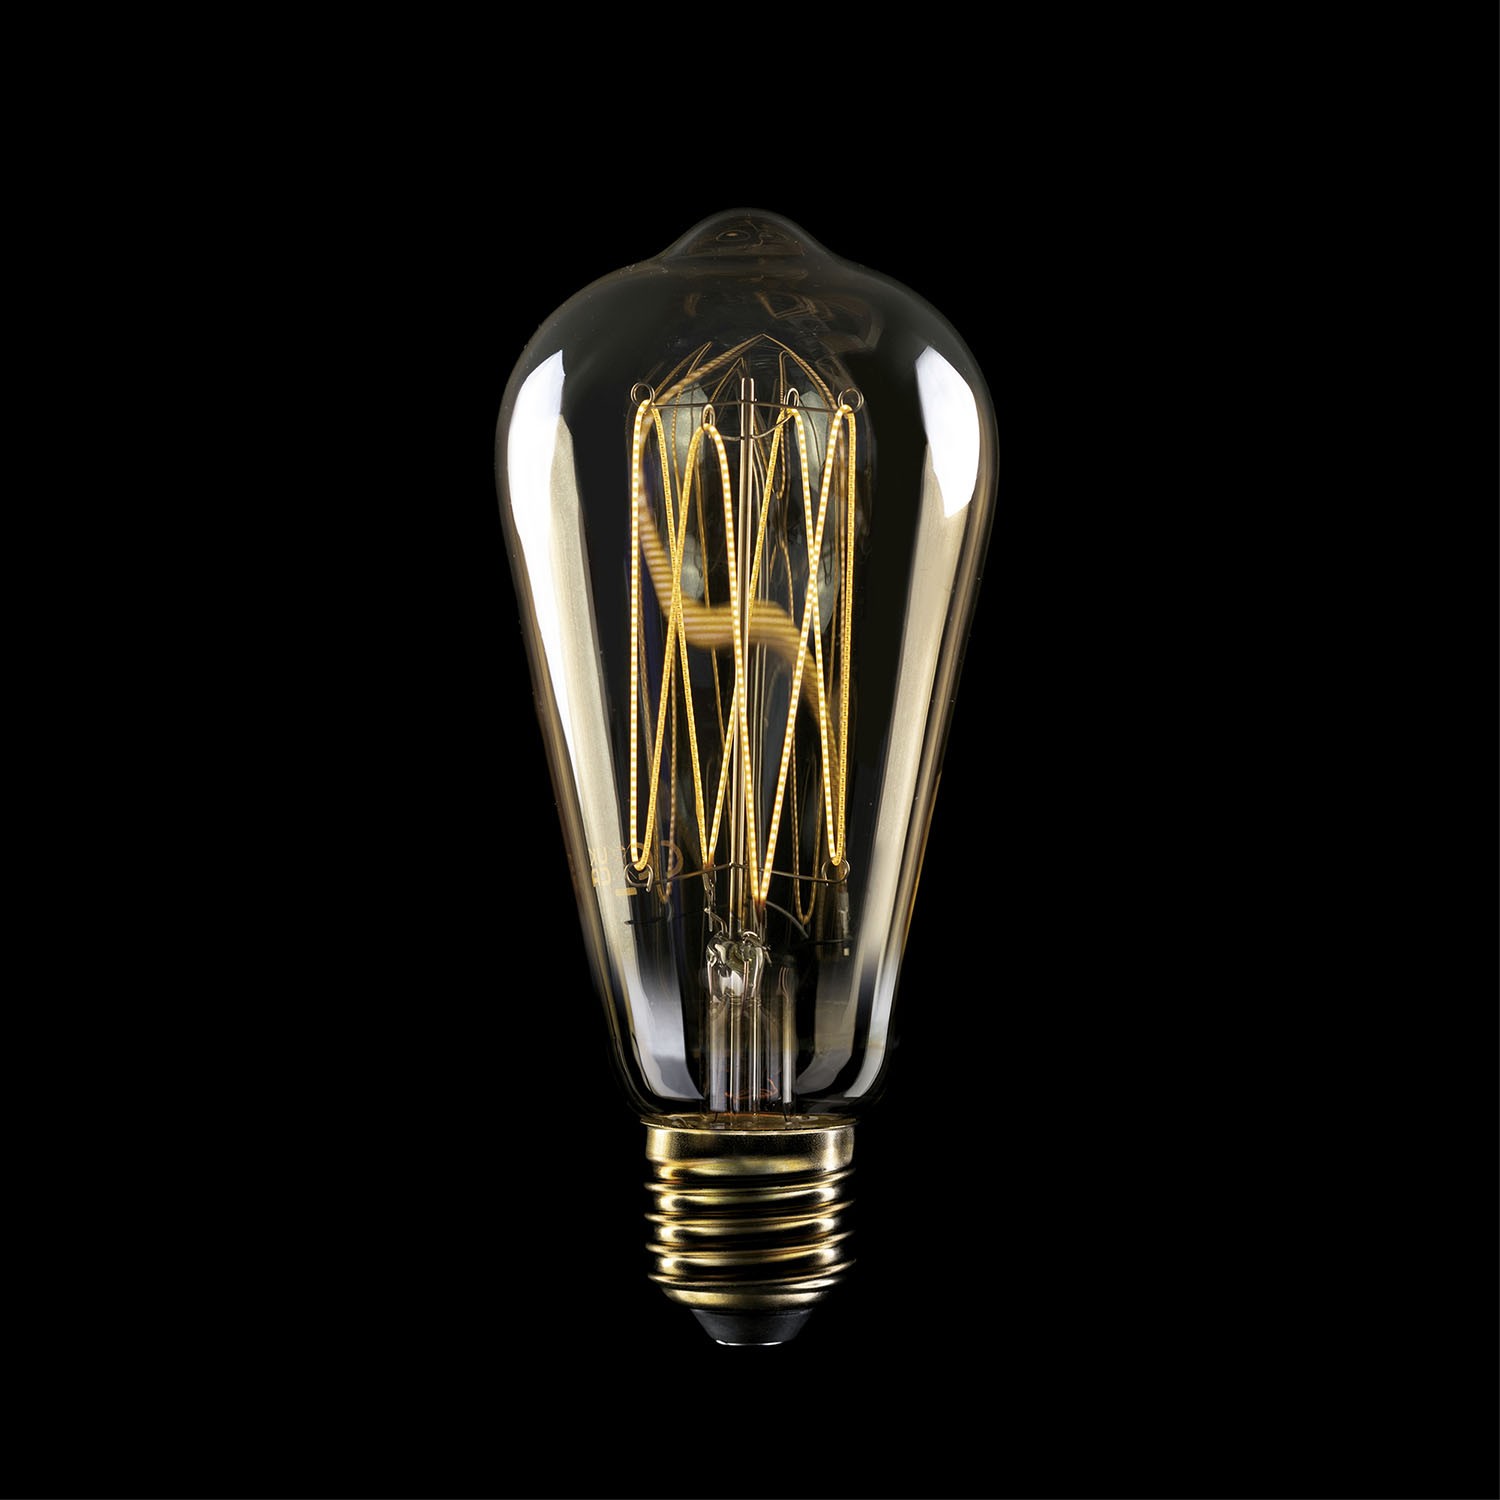 LED žarulja zlatne boje C54 Carbon Linije s ravnim nitima Edison ST64 7W E27 Dimabilna 2700K